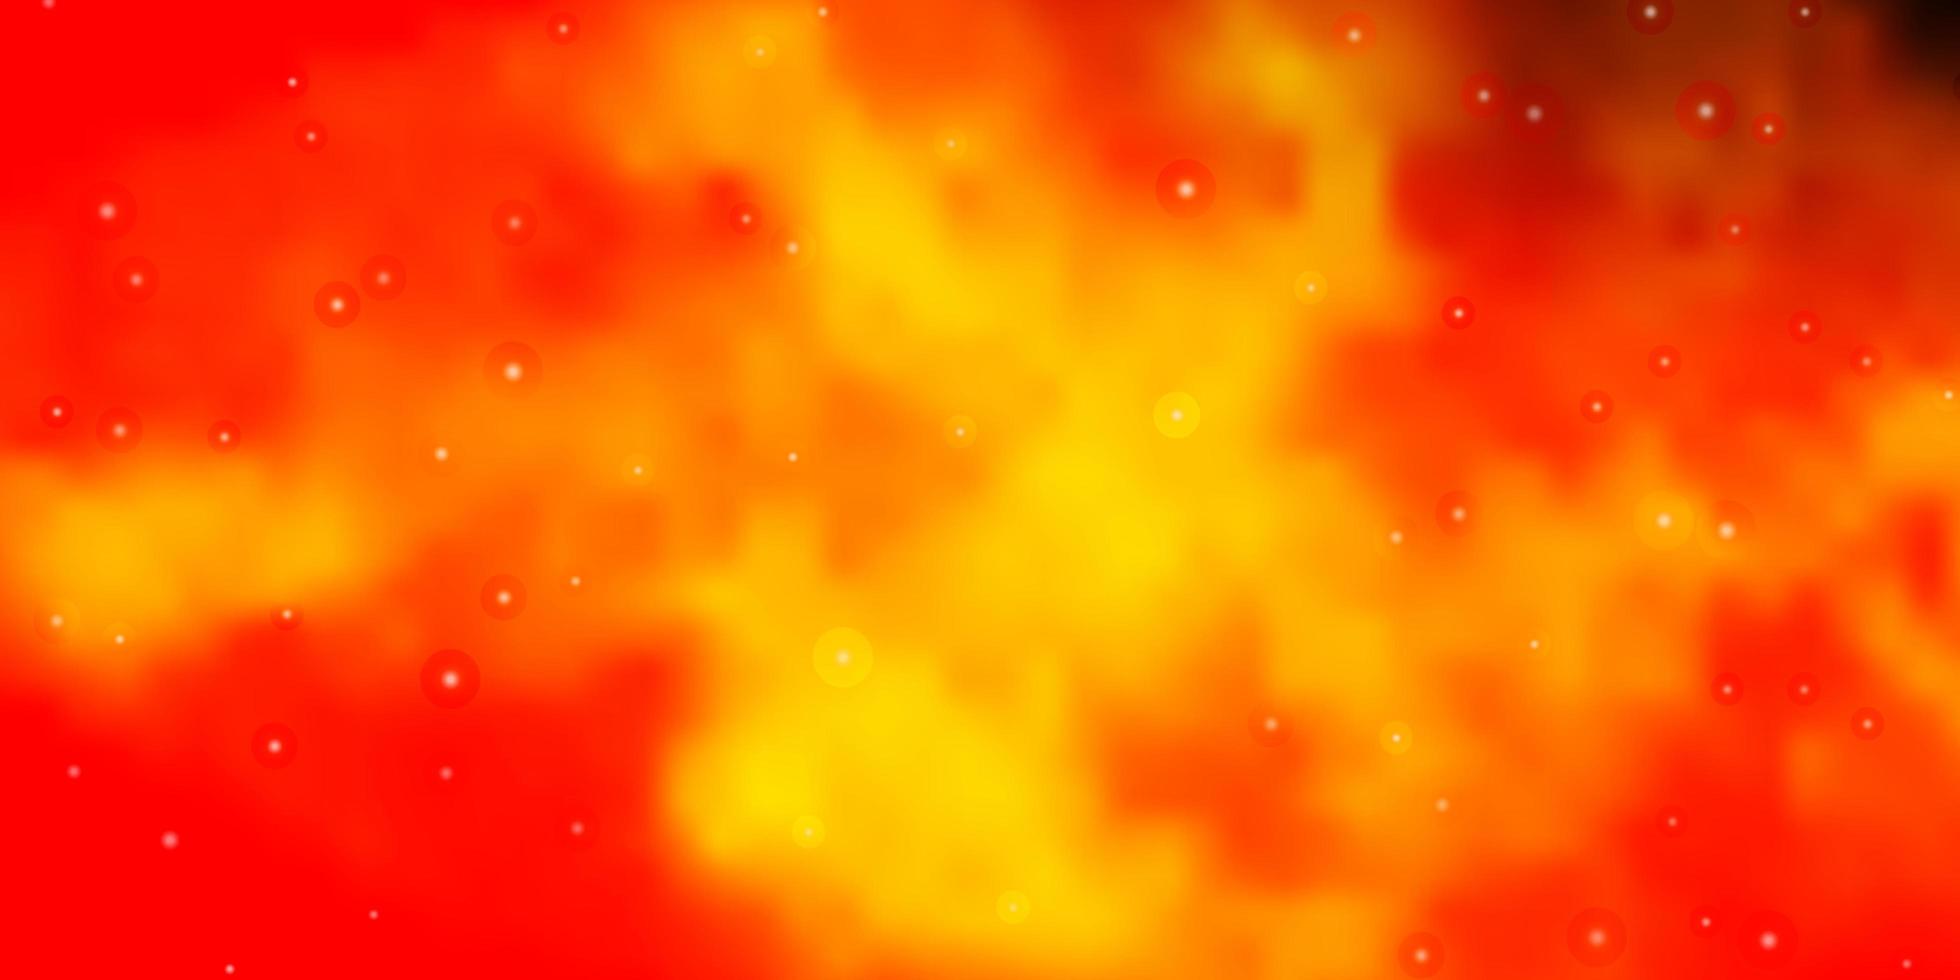 sfondo vettoriale arancione scuro con stelle colorate. sfocatura del design decorativo in stile semplice con le stelle. tema per i telefoni cellulari.